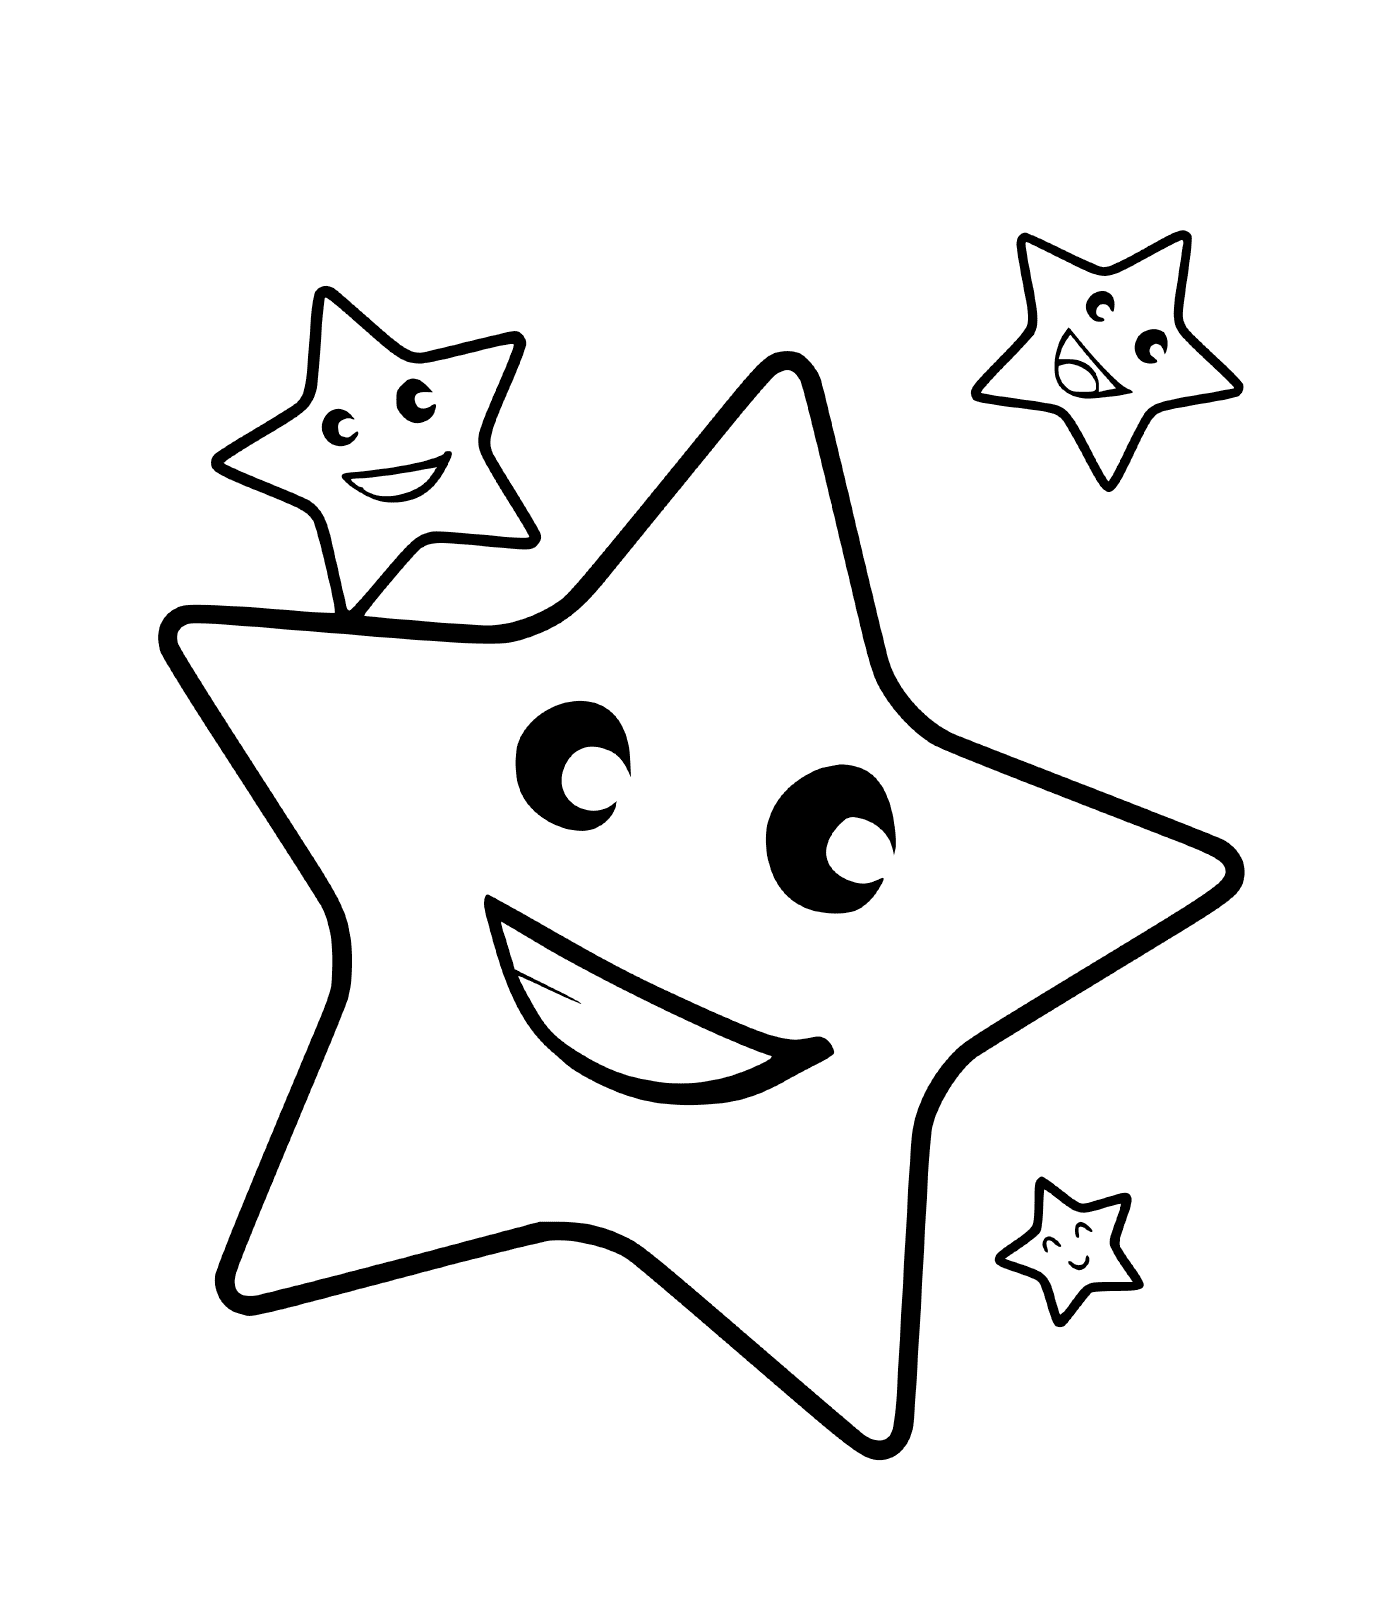  Звезда с тремя улыбающимися лицами 